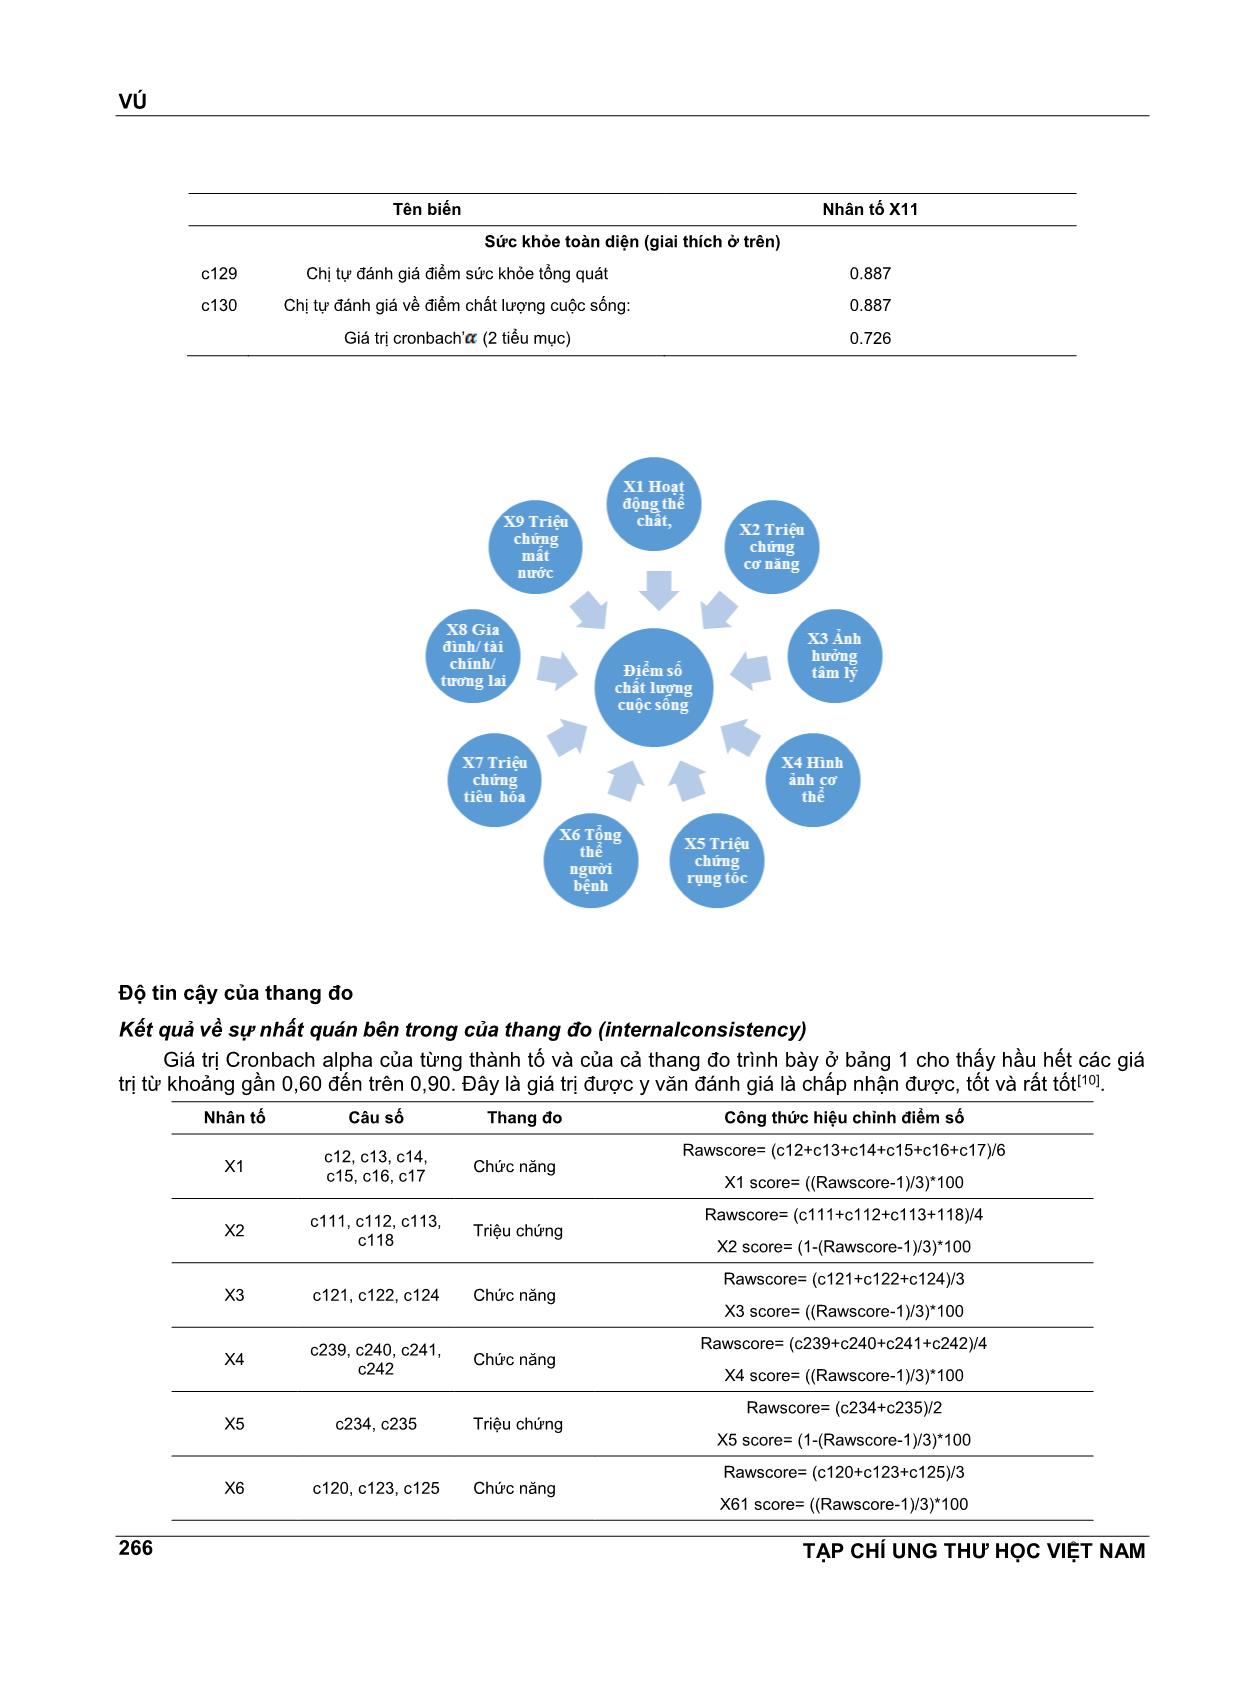 Giá trị của bộ câu hỏi eortc qlq - Br53 để đo lường chất lượng cuộc sống cho bệnh nhân ung thư vú tại bệnh viện ung bướu thành phố Hồ Chí Minh trang 9